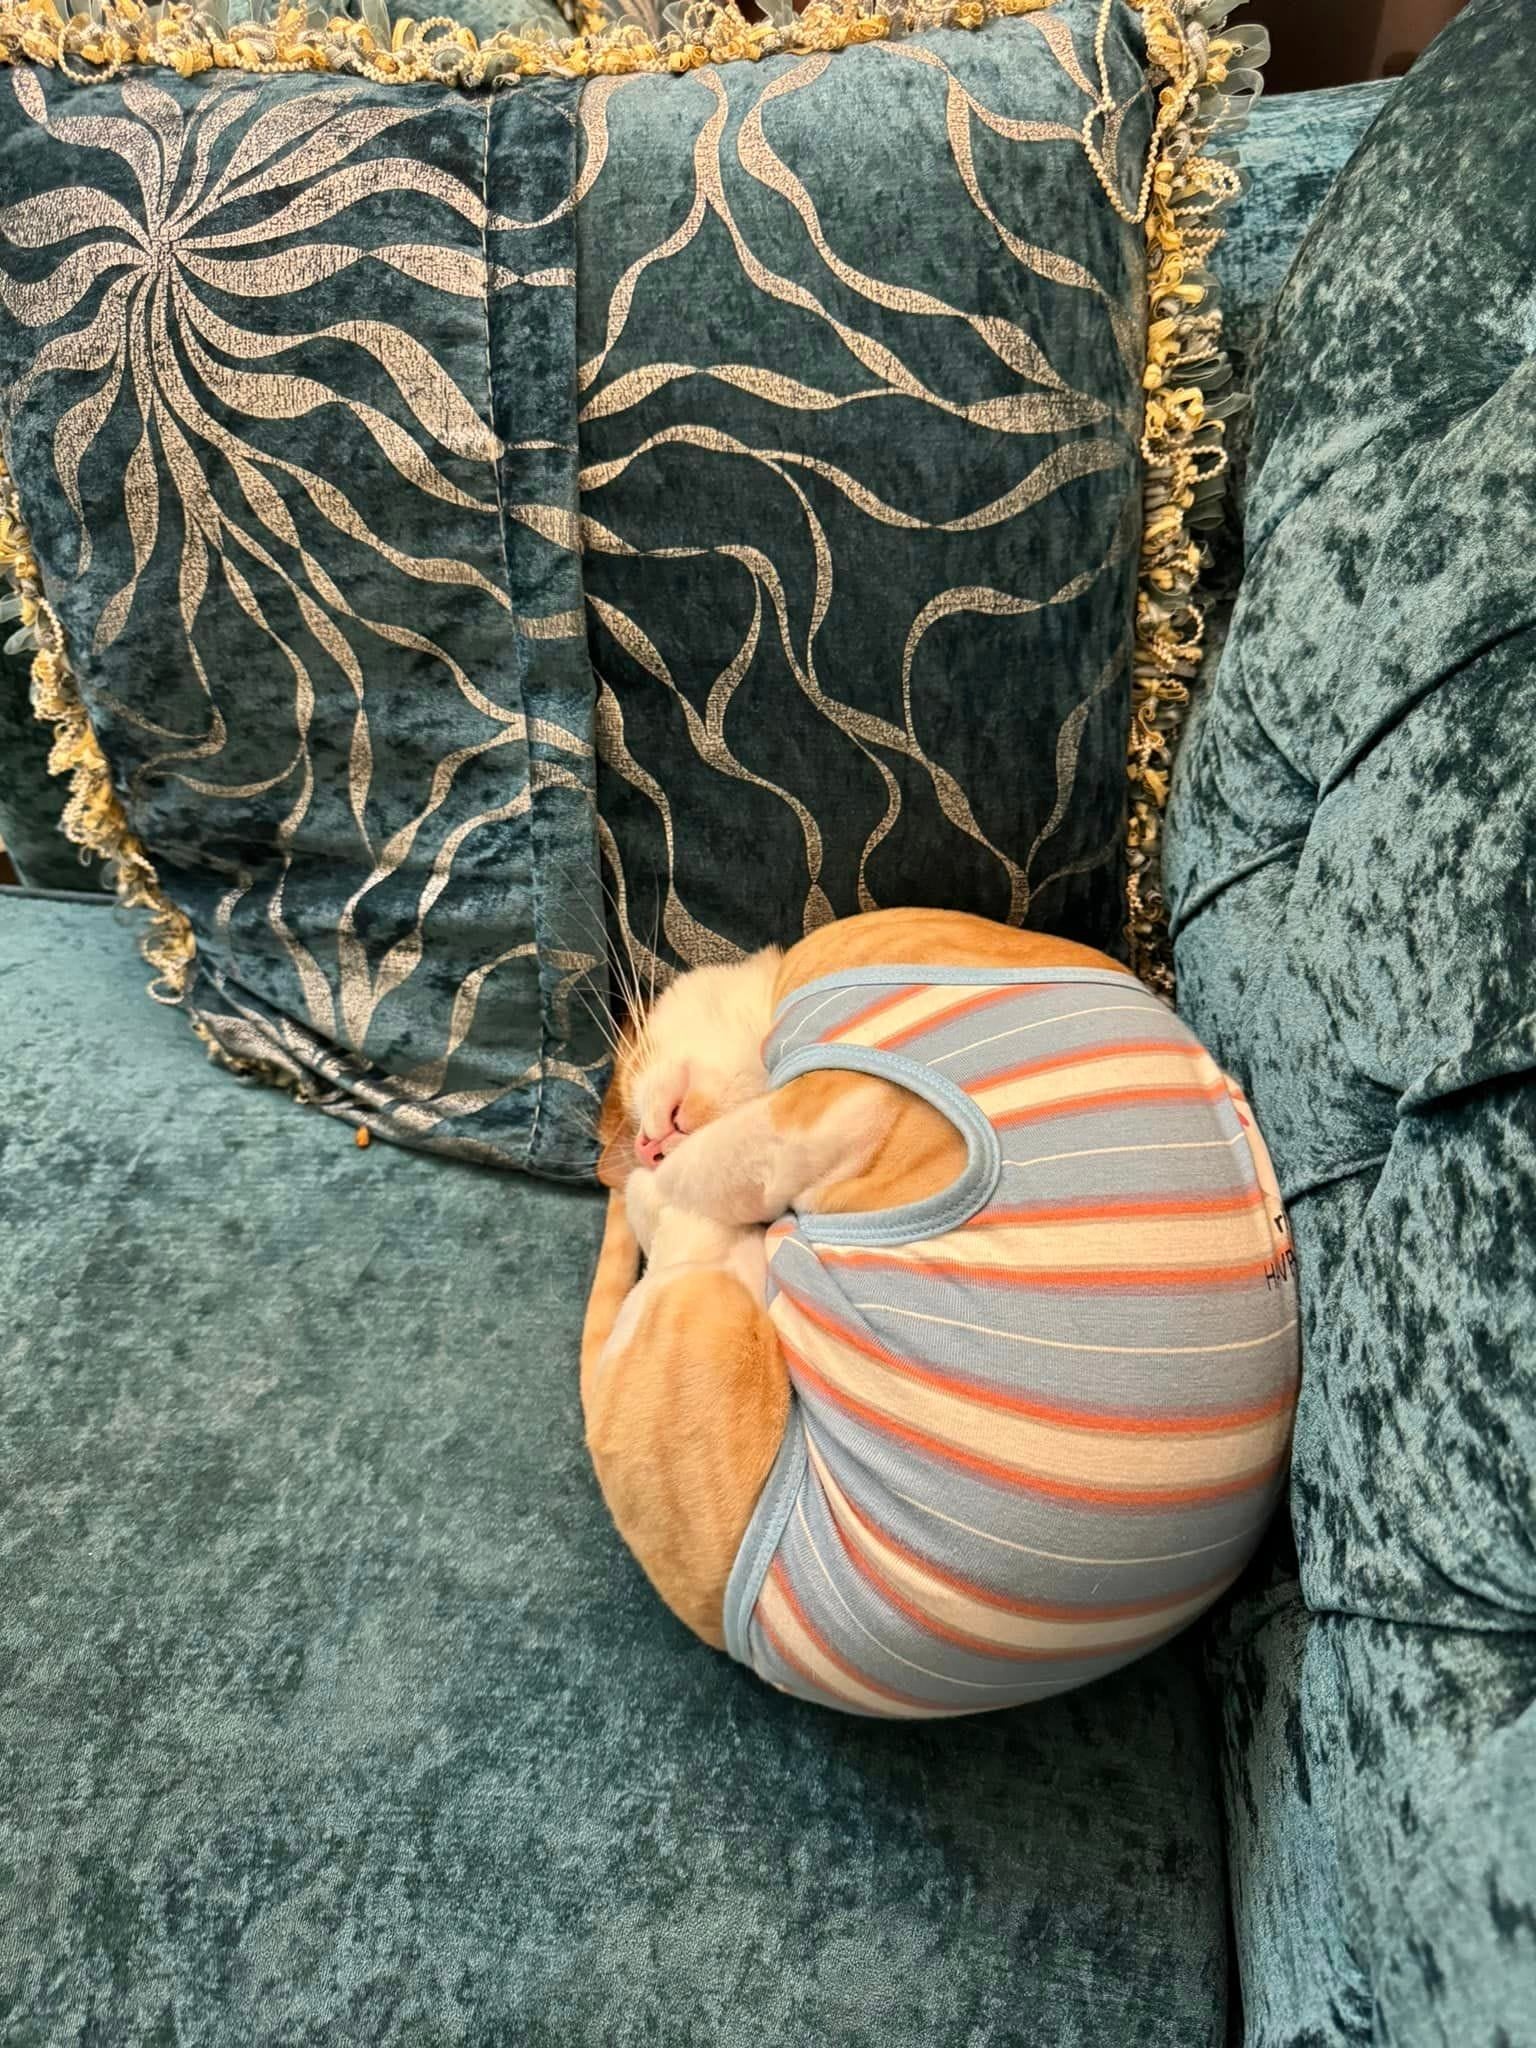 แมวส้มแปลงร่างเป็นหอย